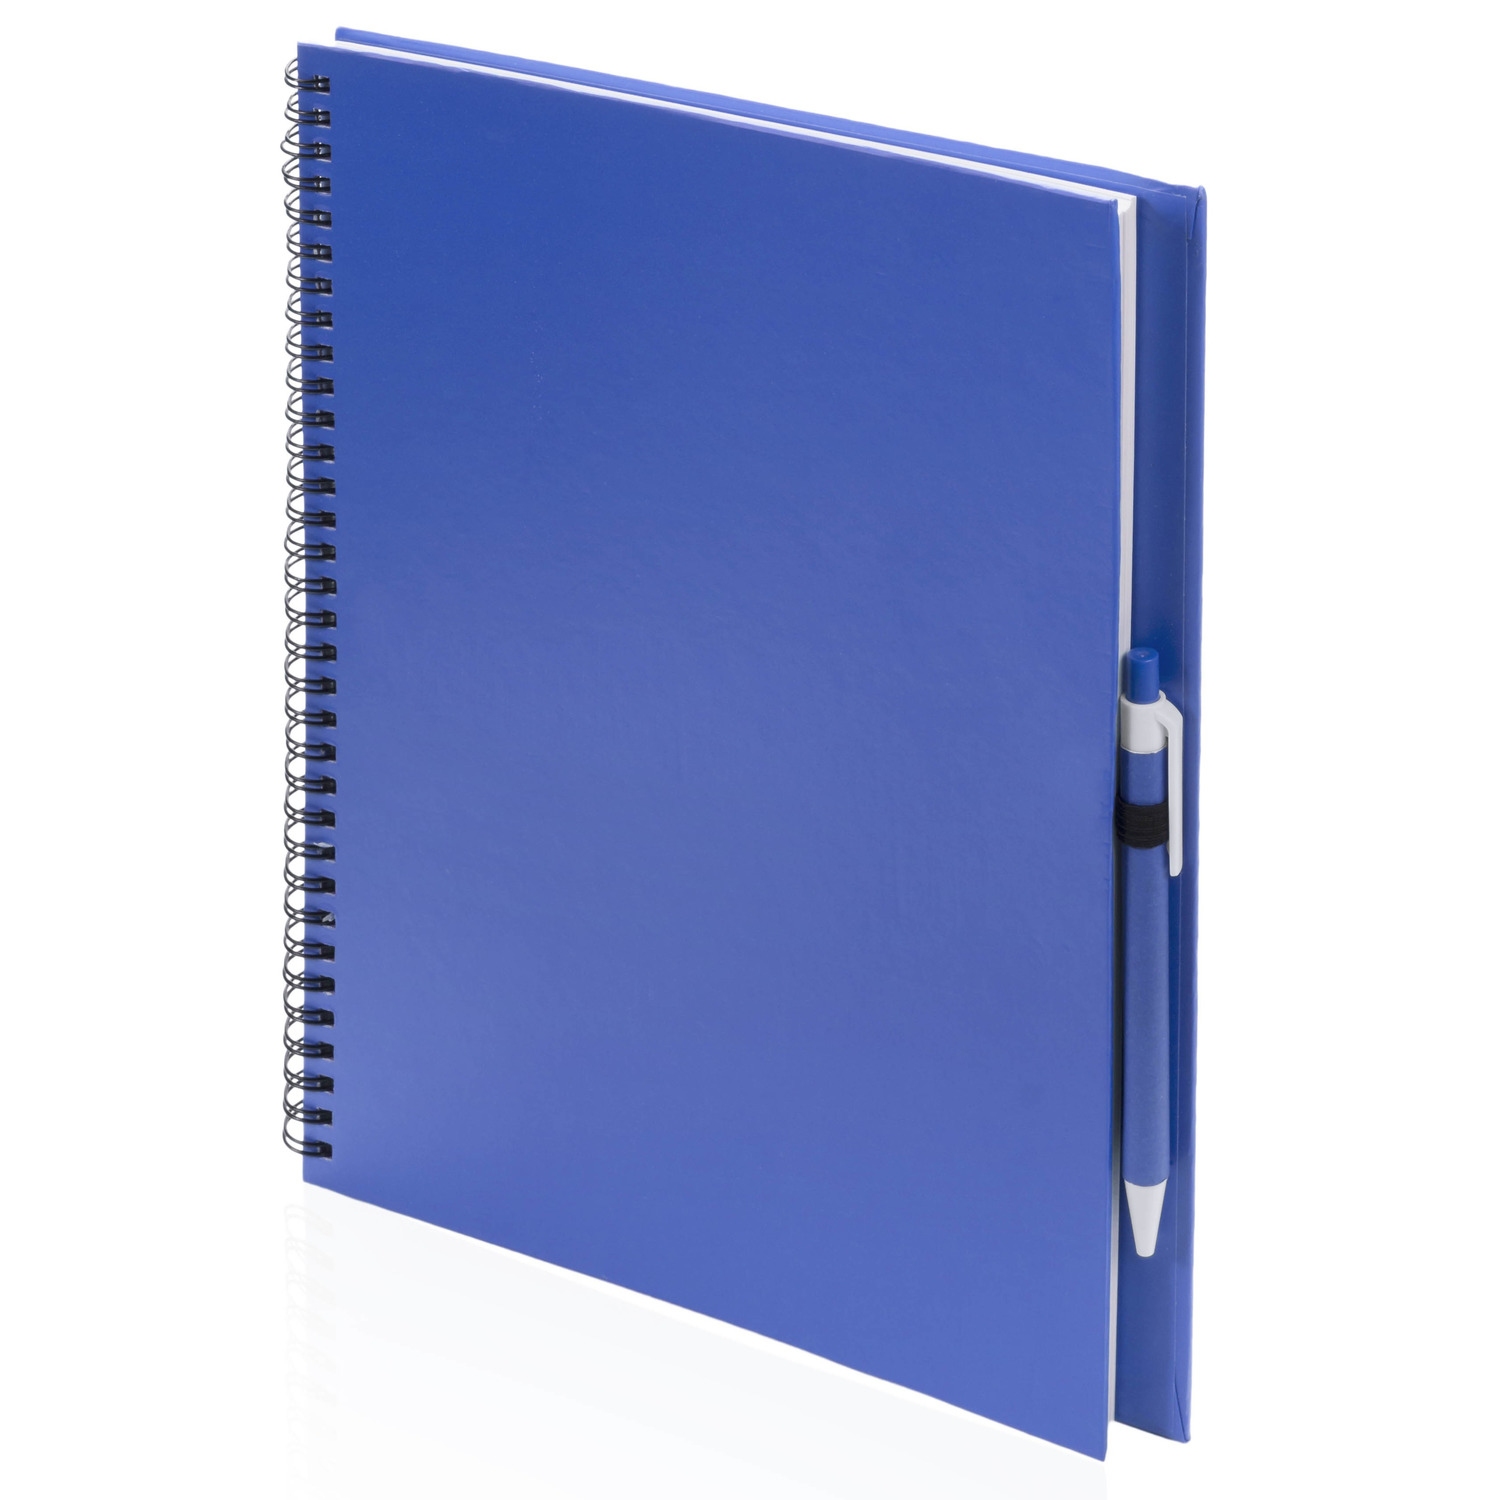 3x Schetsboeken-tekenboeken blauw A4 formaat 80 vellen inclusief pennen